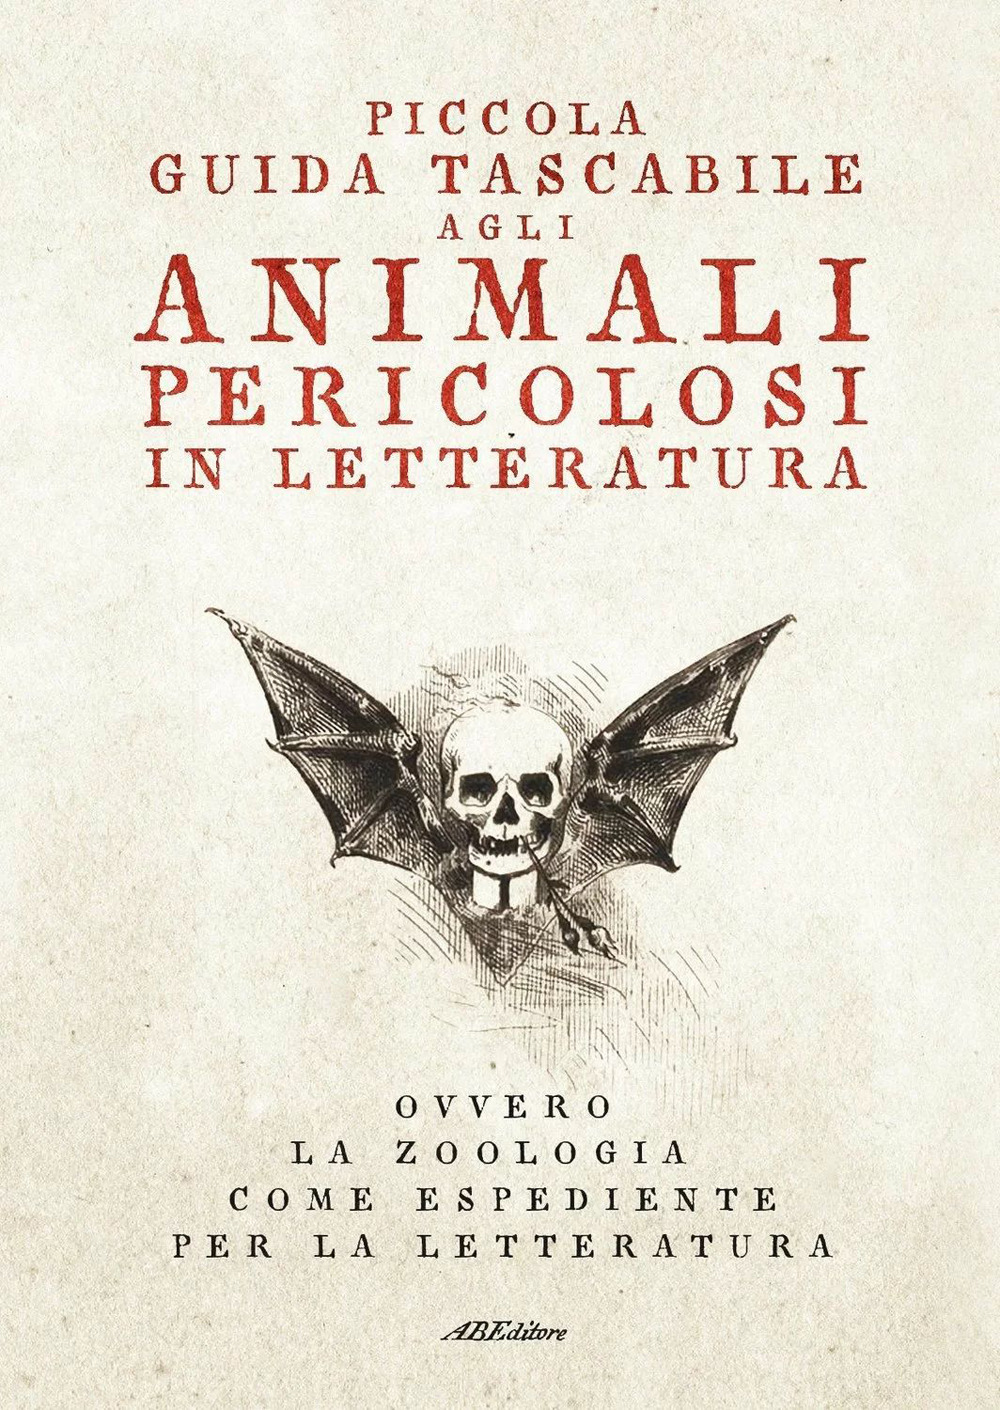 Image of Piccola guida tascabile agli animali pericolosi in letteratura. Ovvero la zoologia come espediente per la letteratura